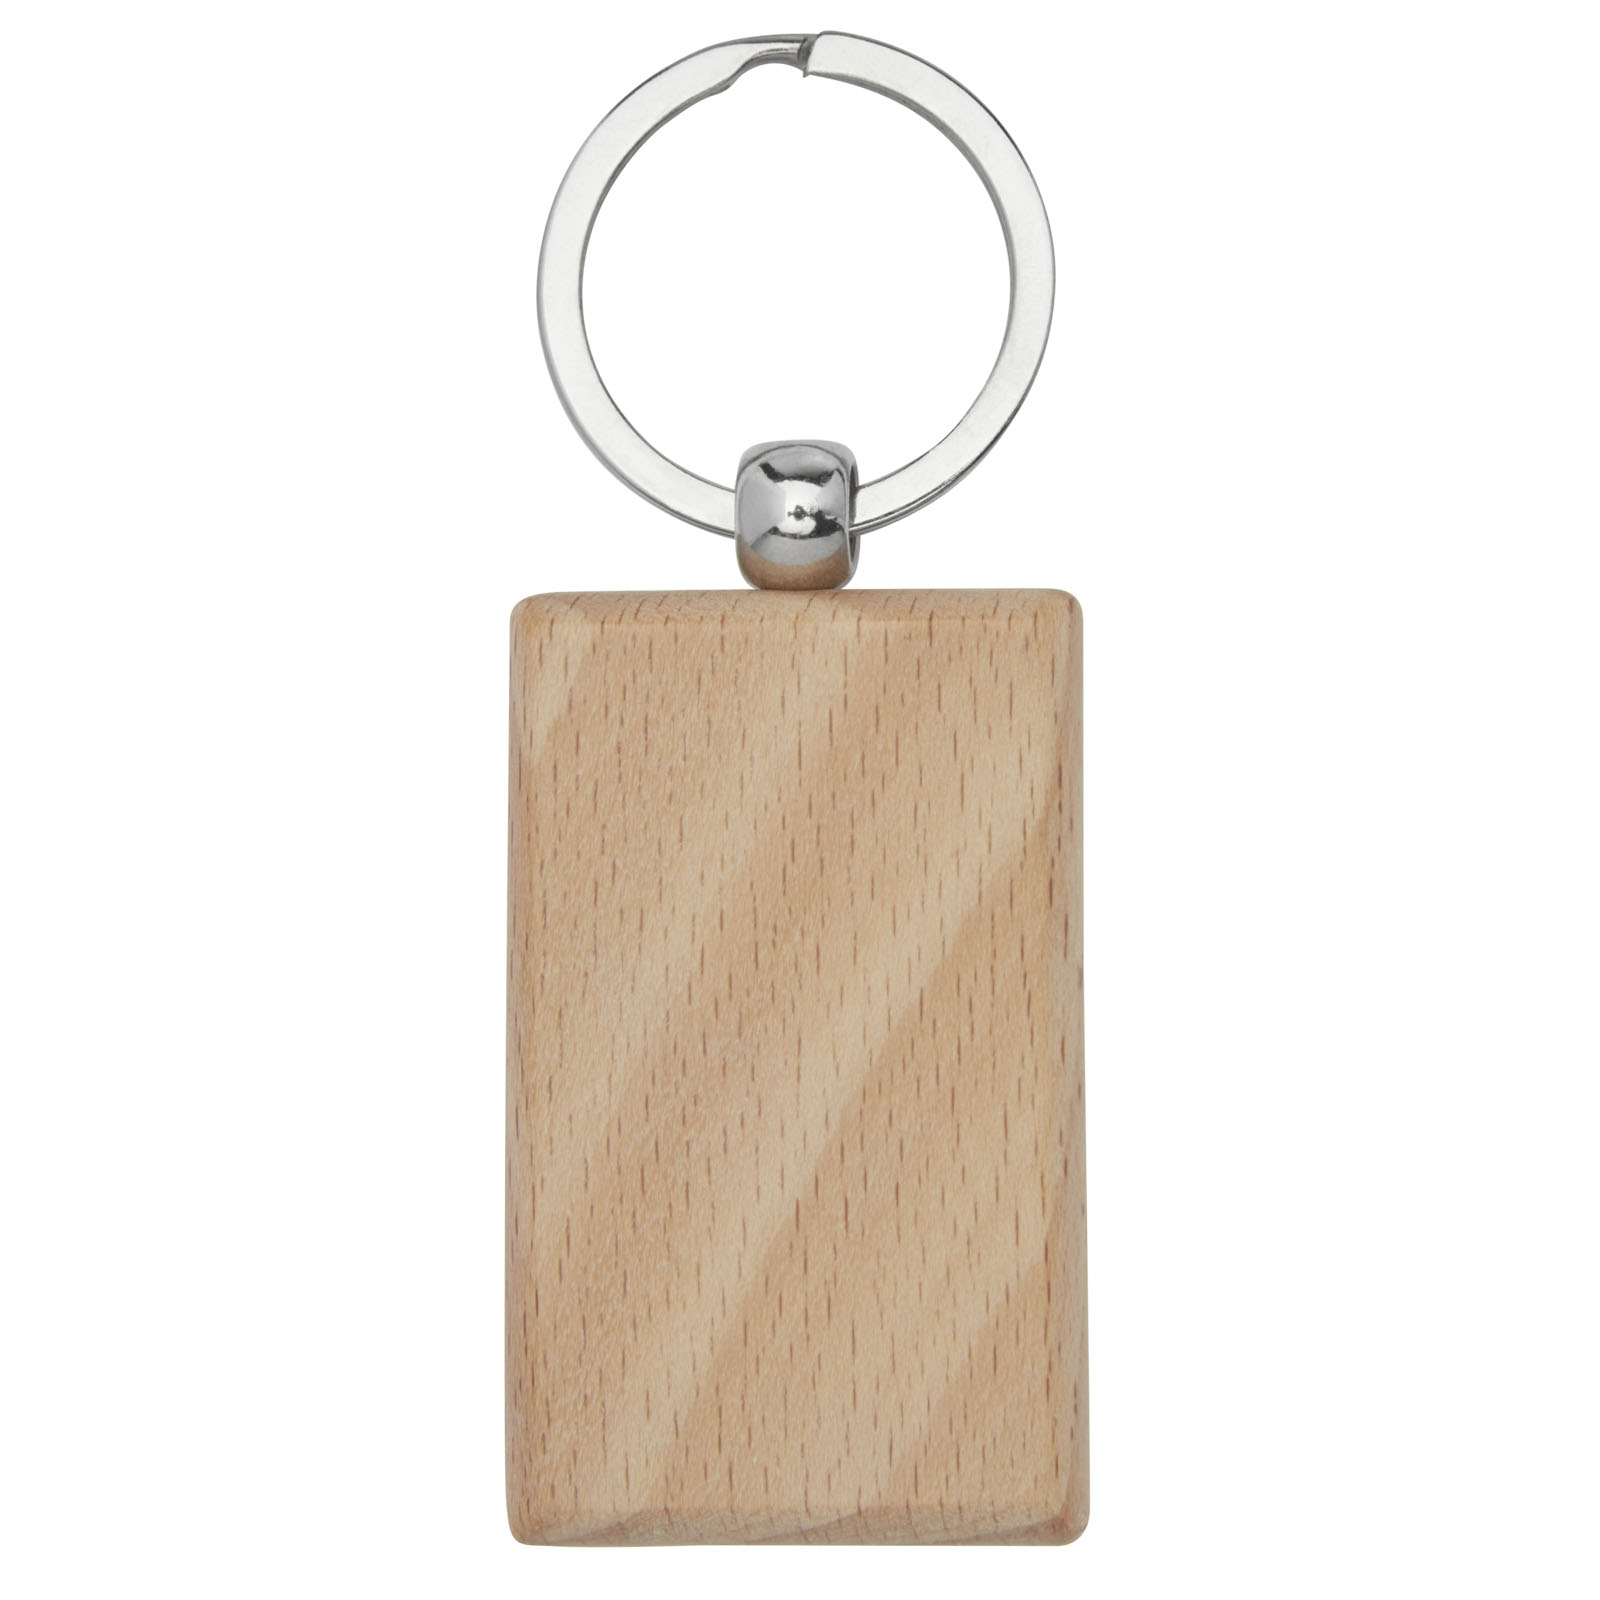 Porte-clés publicitaires - Porte-clés rectangulaire Gian en bois de hêtre - 2